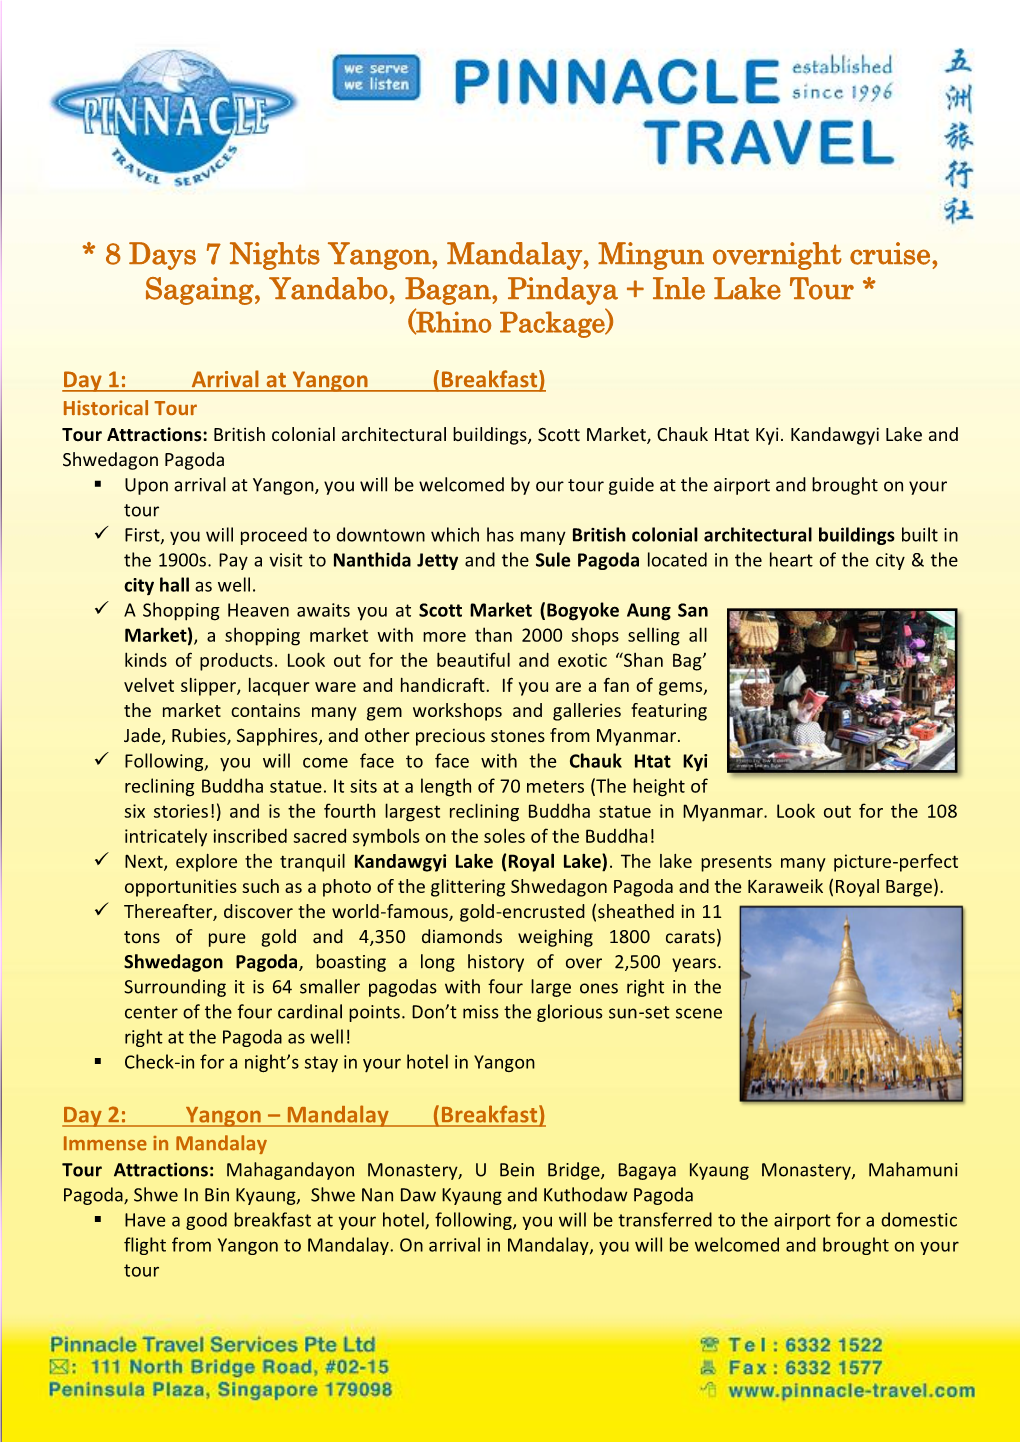 8 Days 7 Nights Yangon, Mandalay, Mingun Overnight Cruise, Sagaing, Yandabo, Bagan, Pindaya + Inle Lake Tour * (Rhino Package)